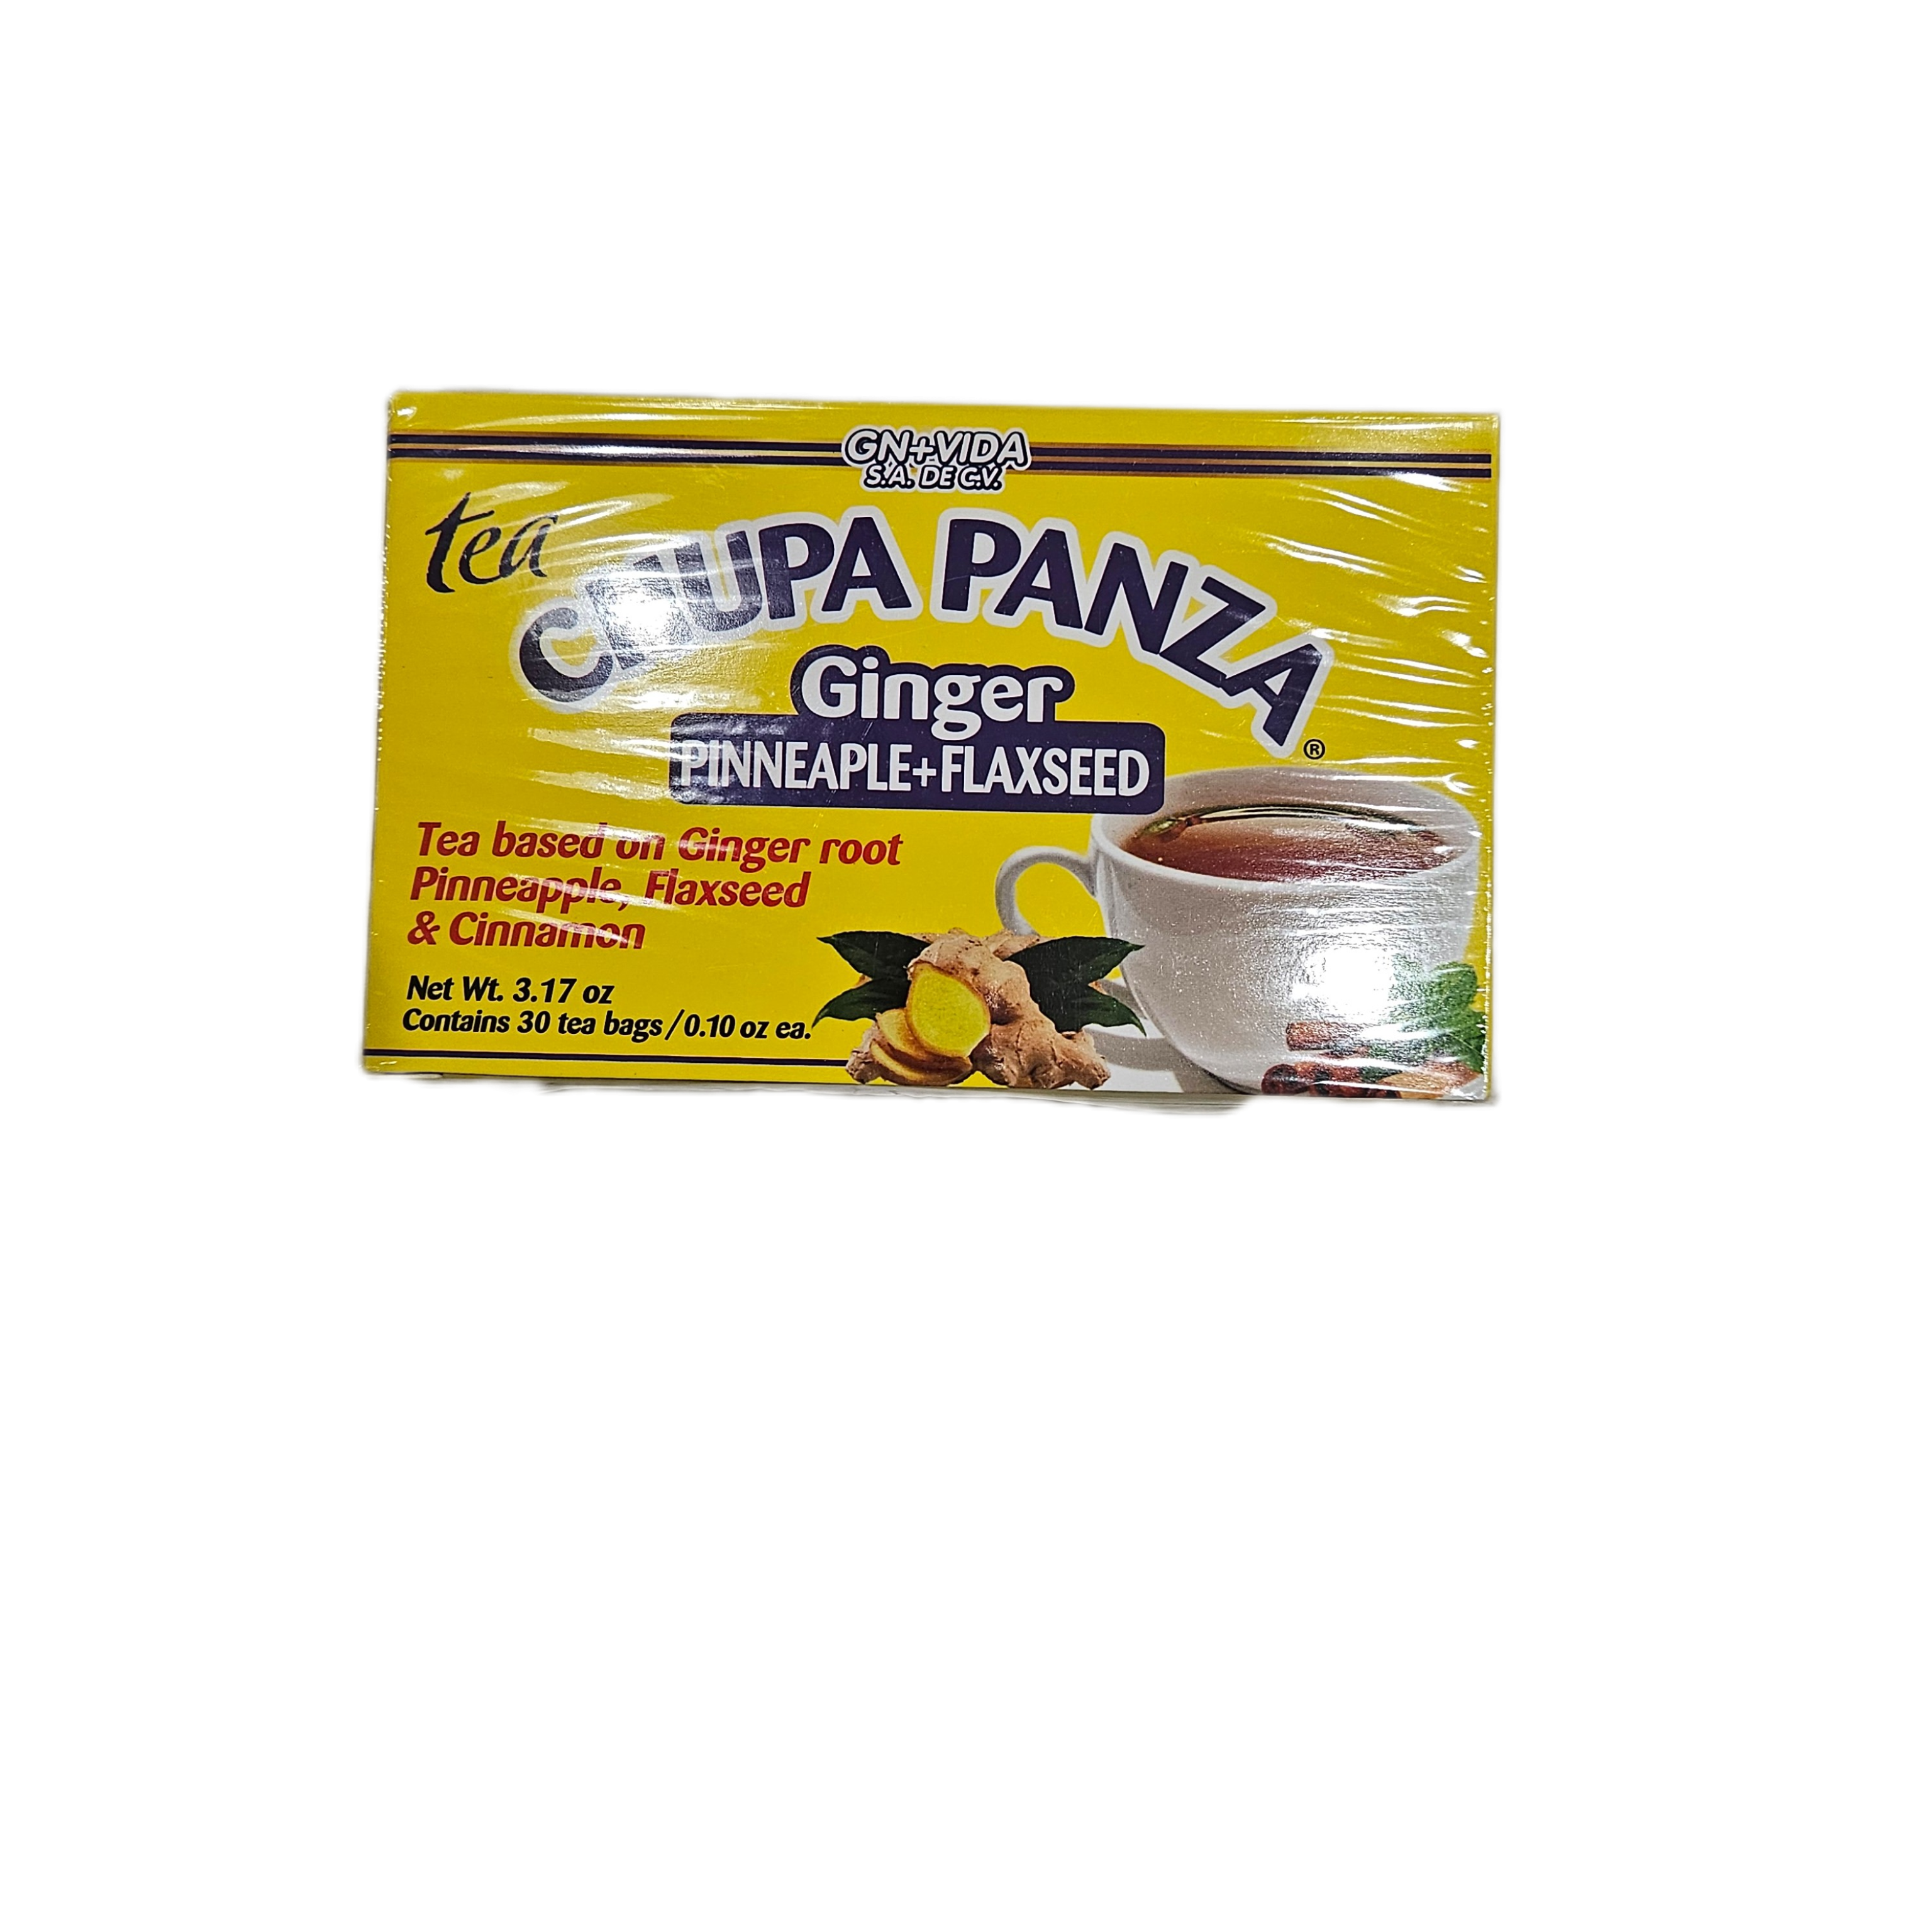 Lo+Natural Chupa Panza Te (30ct/box)